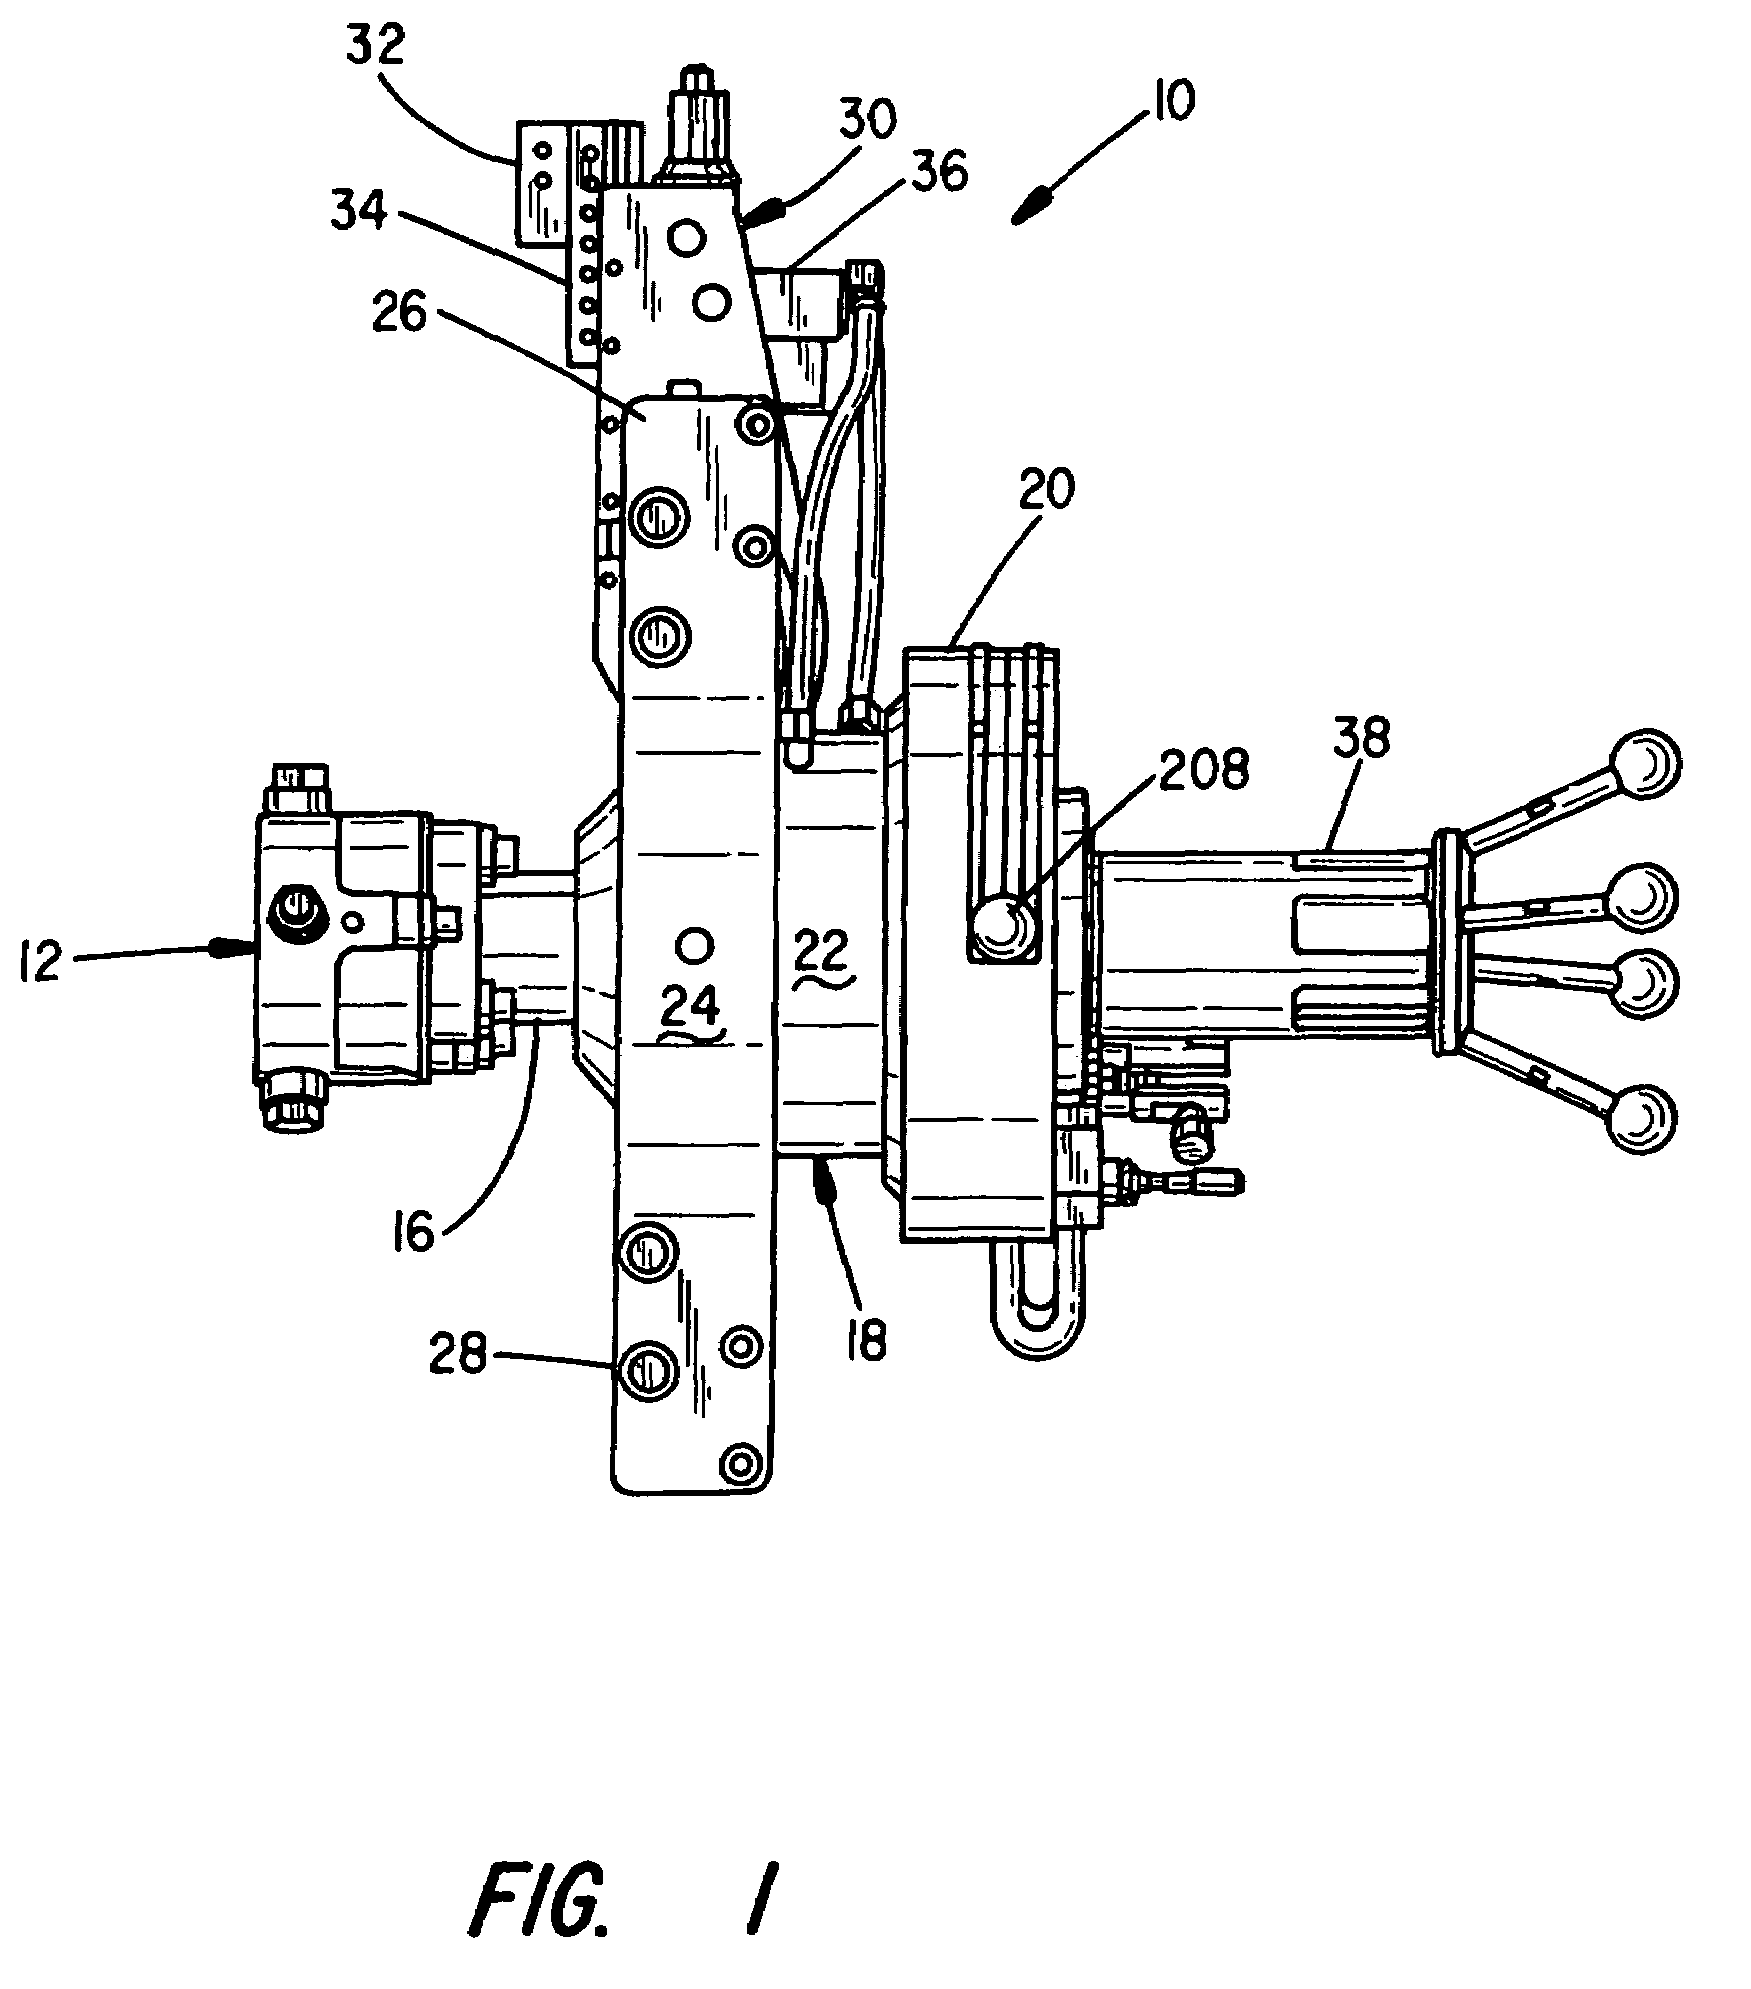 Air-operated end prep machine